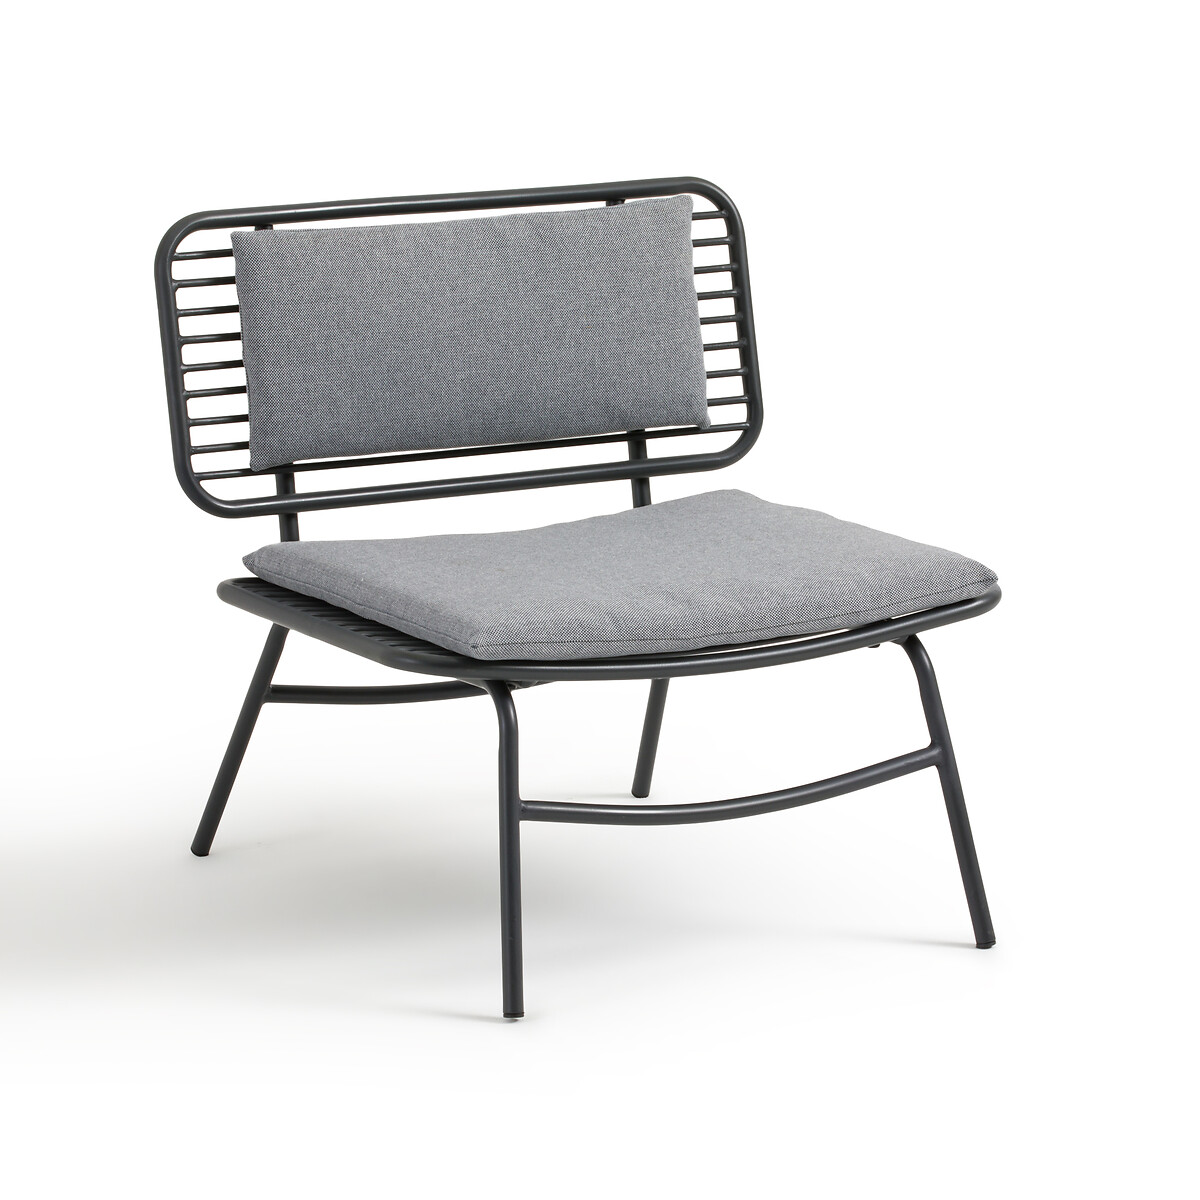 Кресло Низкое для сада из металла Roric единый размер серый